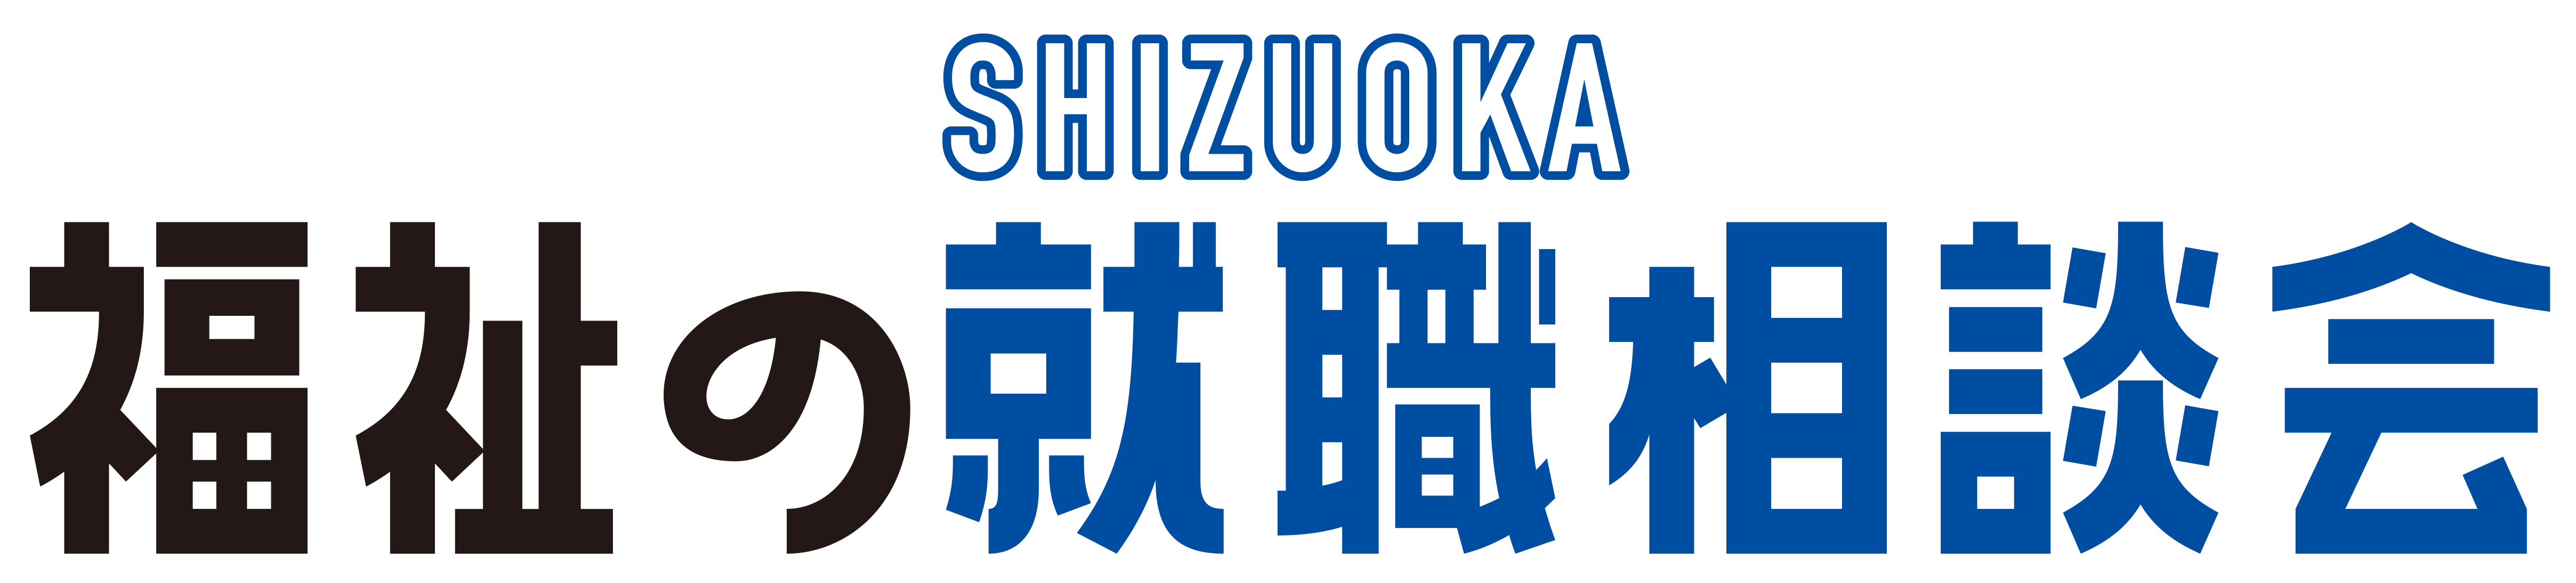 SHIZUOKA福祉の就職フェア